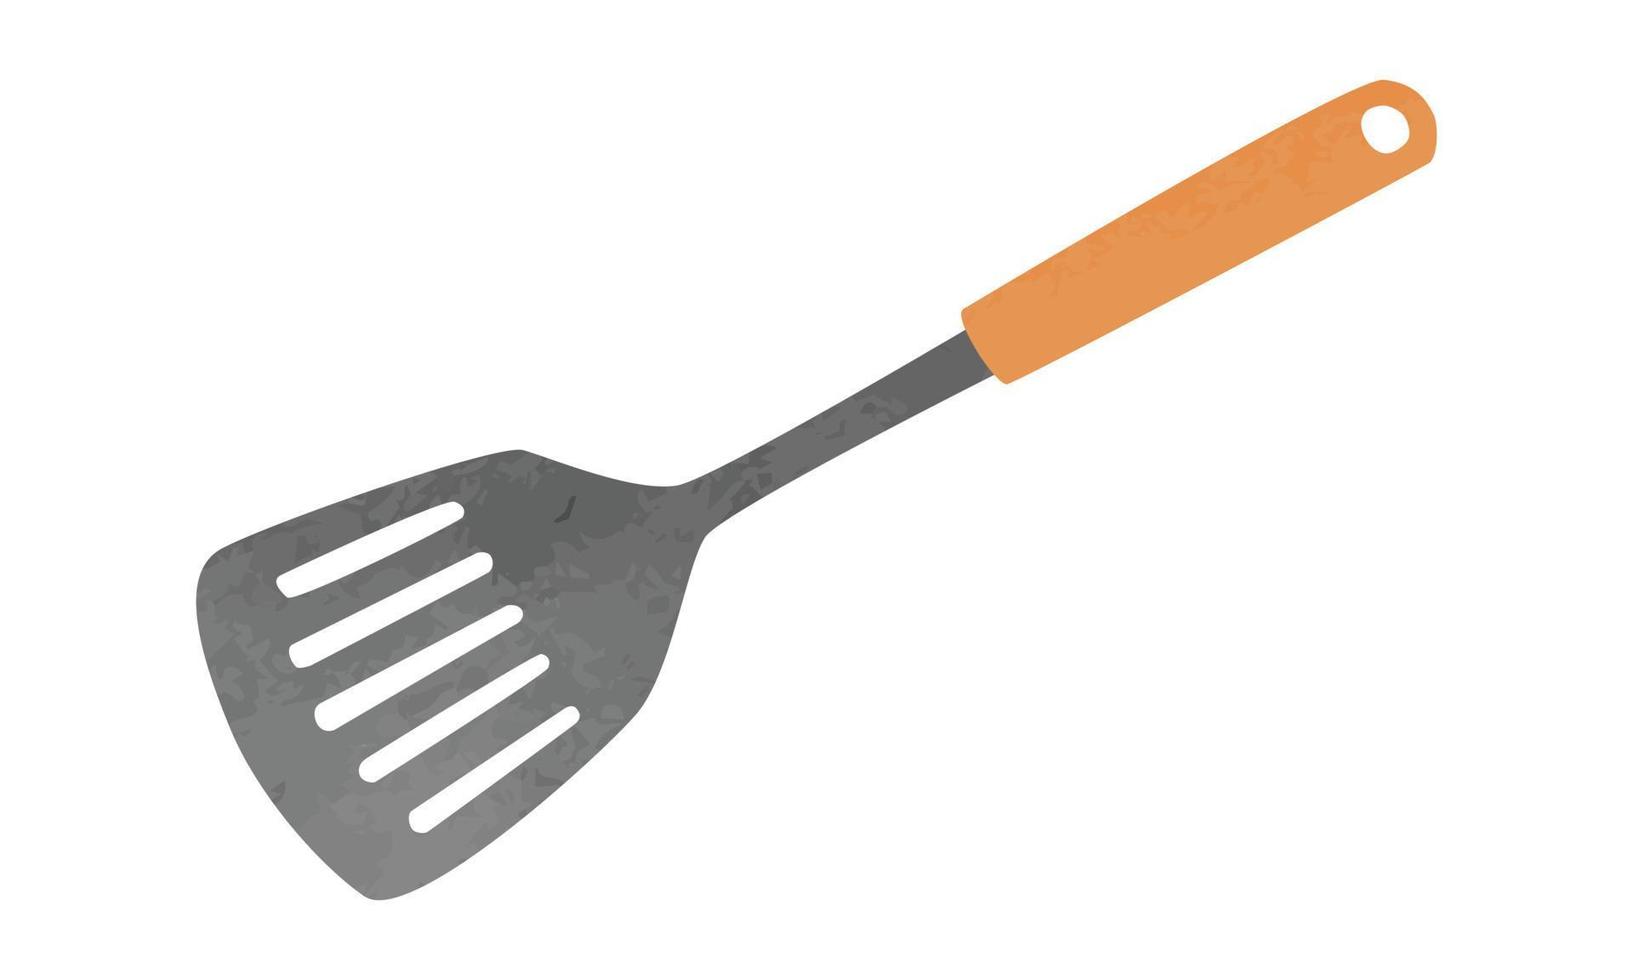 spatule de cuisine simple avec illustration de vecteur aquarelle manche en bois isolé sur fond blanc. clipart de spatule fendue. style de dessin animé de tourneur de cuisine. spatule dessinée à la main